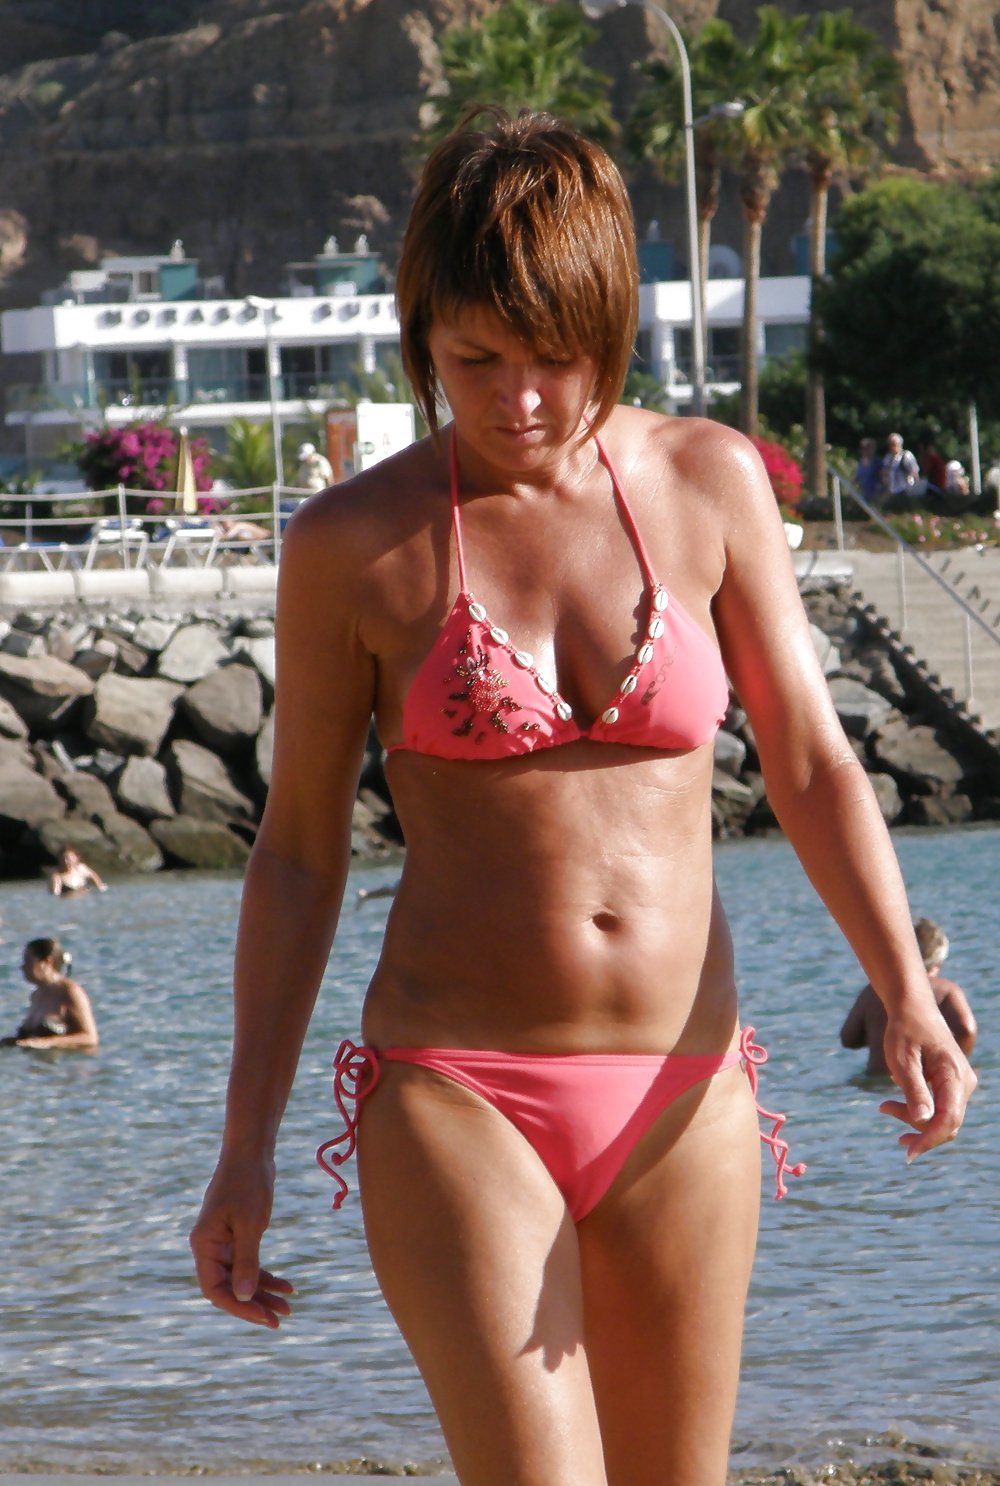 Spanish summer girls, showing their delightful bodies. #25152508